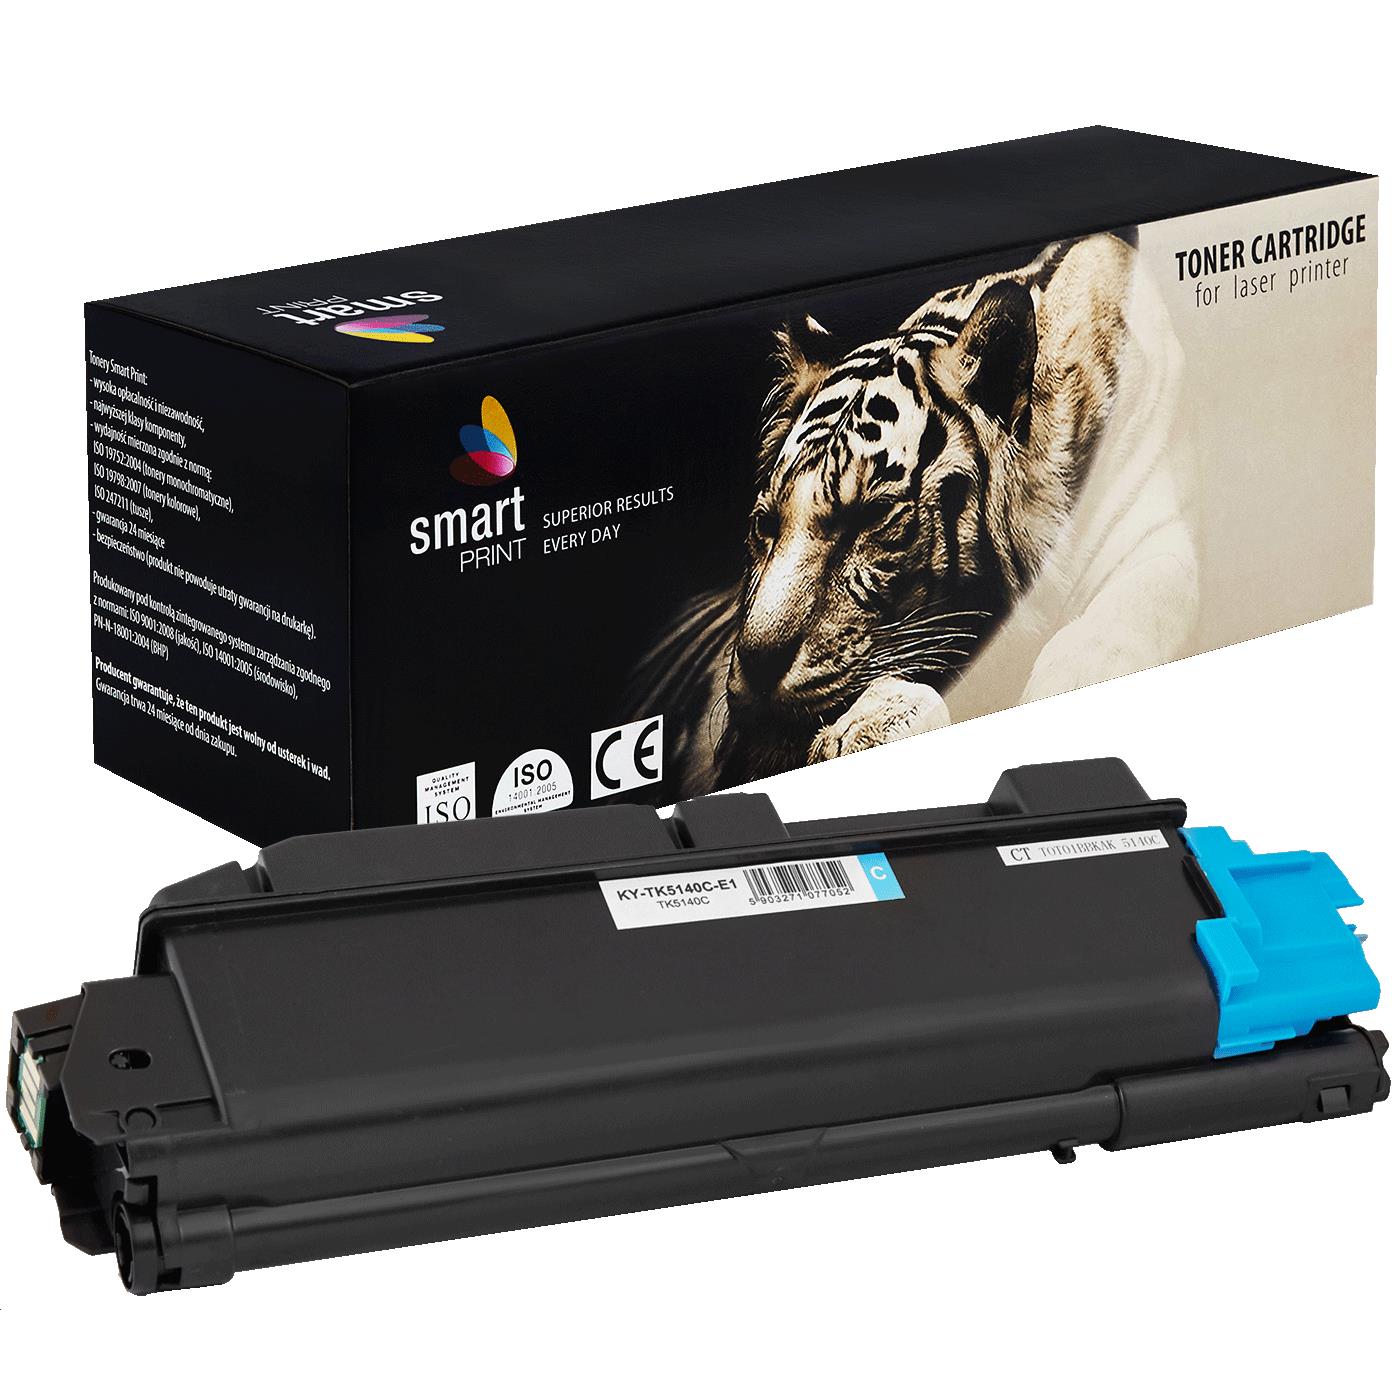 съвместима тонер касета за принтери и печатащи устройства на Kyocera Mita Kyocera: M6030 CDN, M6530 CDN,  P6130 CDN,  new new Toner KY-TK5140C | TK5140C. Ниски цени, прецизно изпълнение, високо качество.